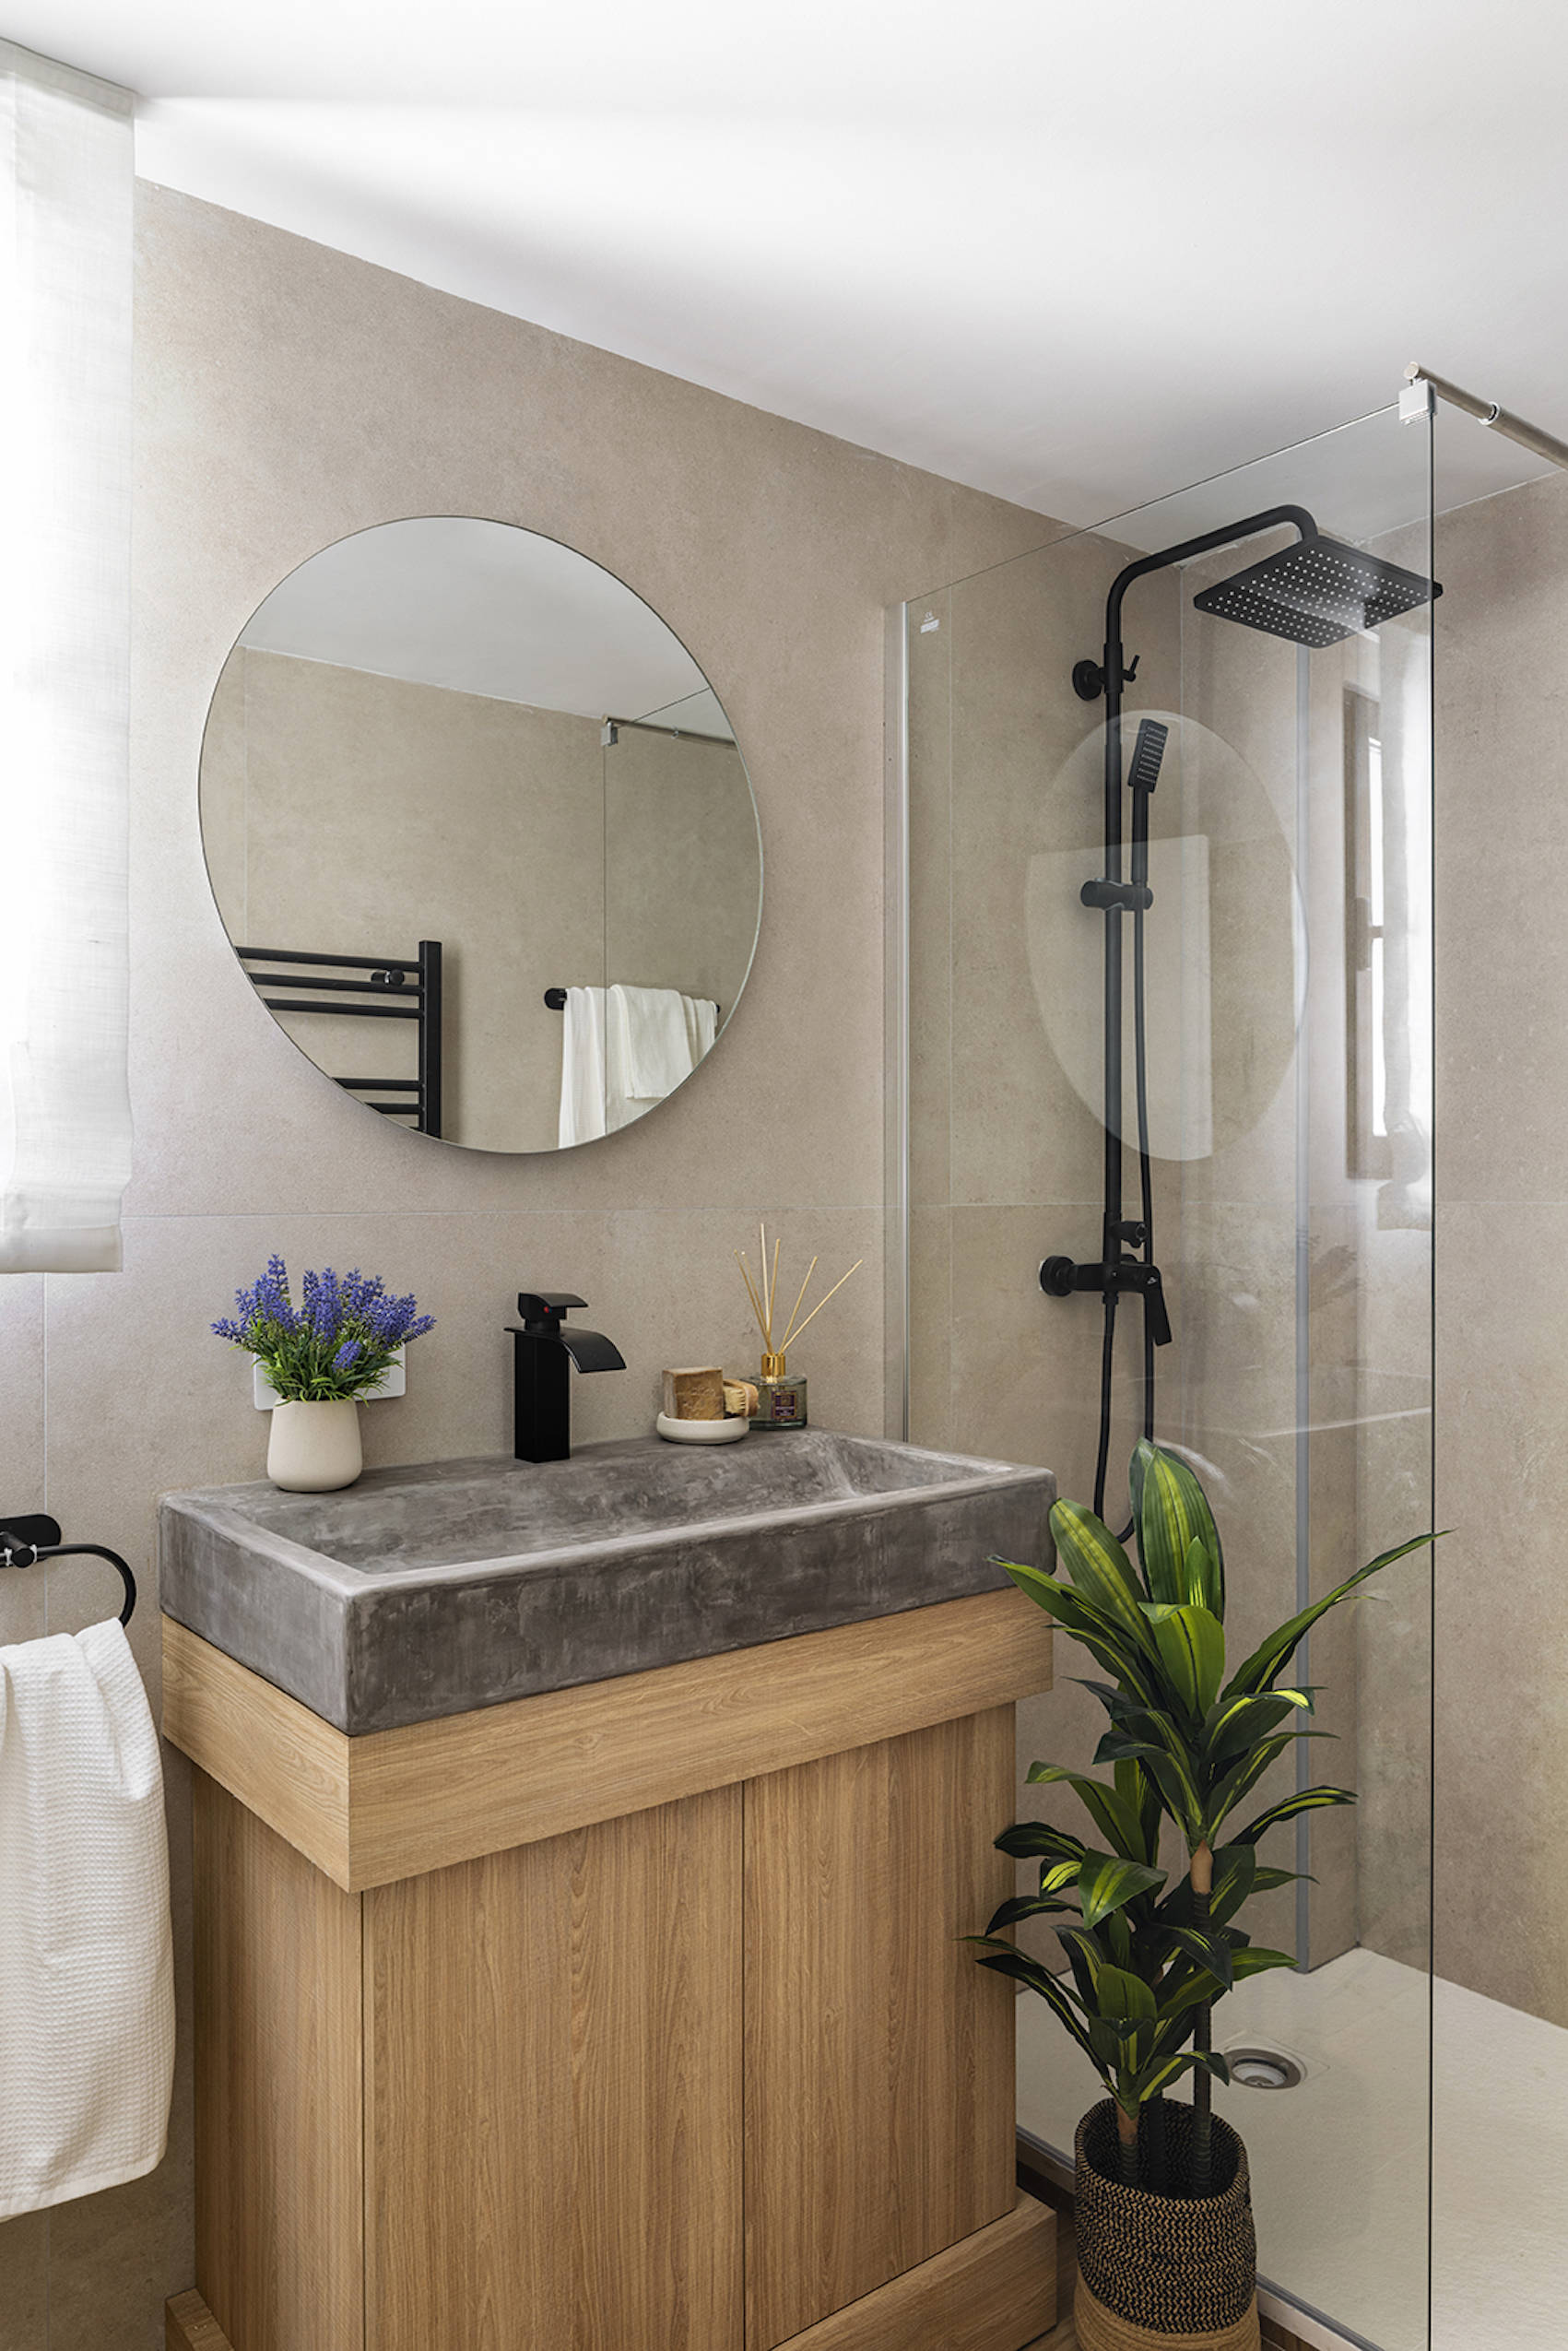 Baño con lavabo de microcemento, mueble de madera y espejo retroiluminado por Alberto Torres PortobelloStreet.es